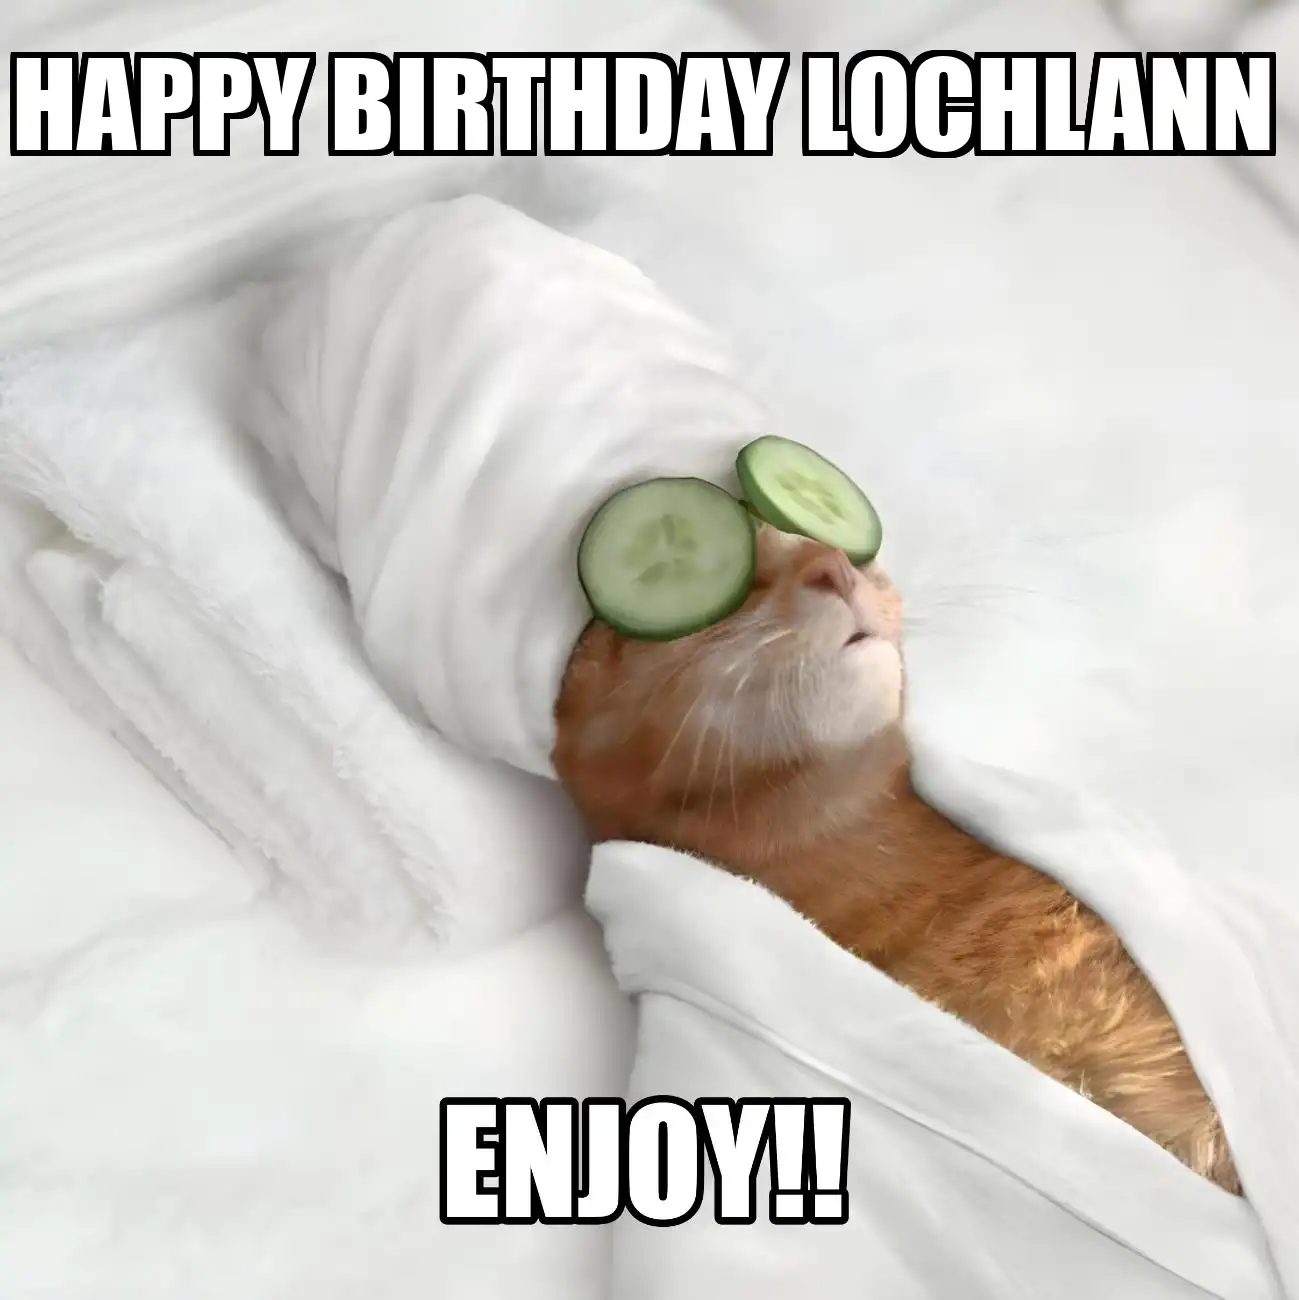 Happy Birthday Lochlann Enjoy Cat Meme